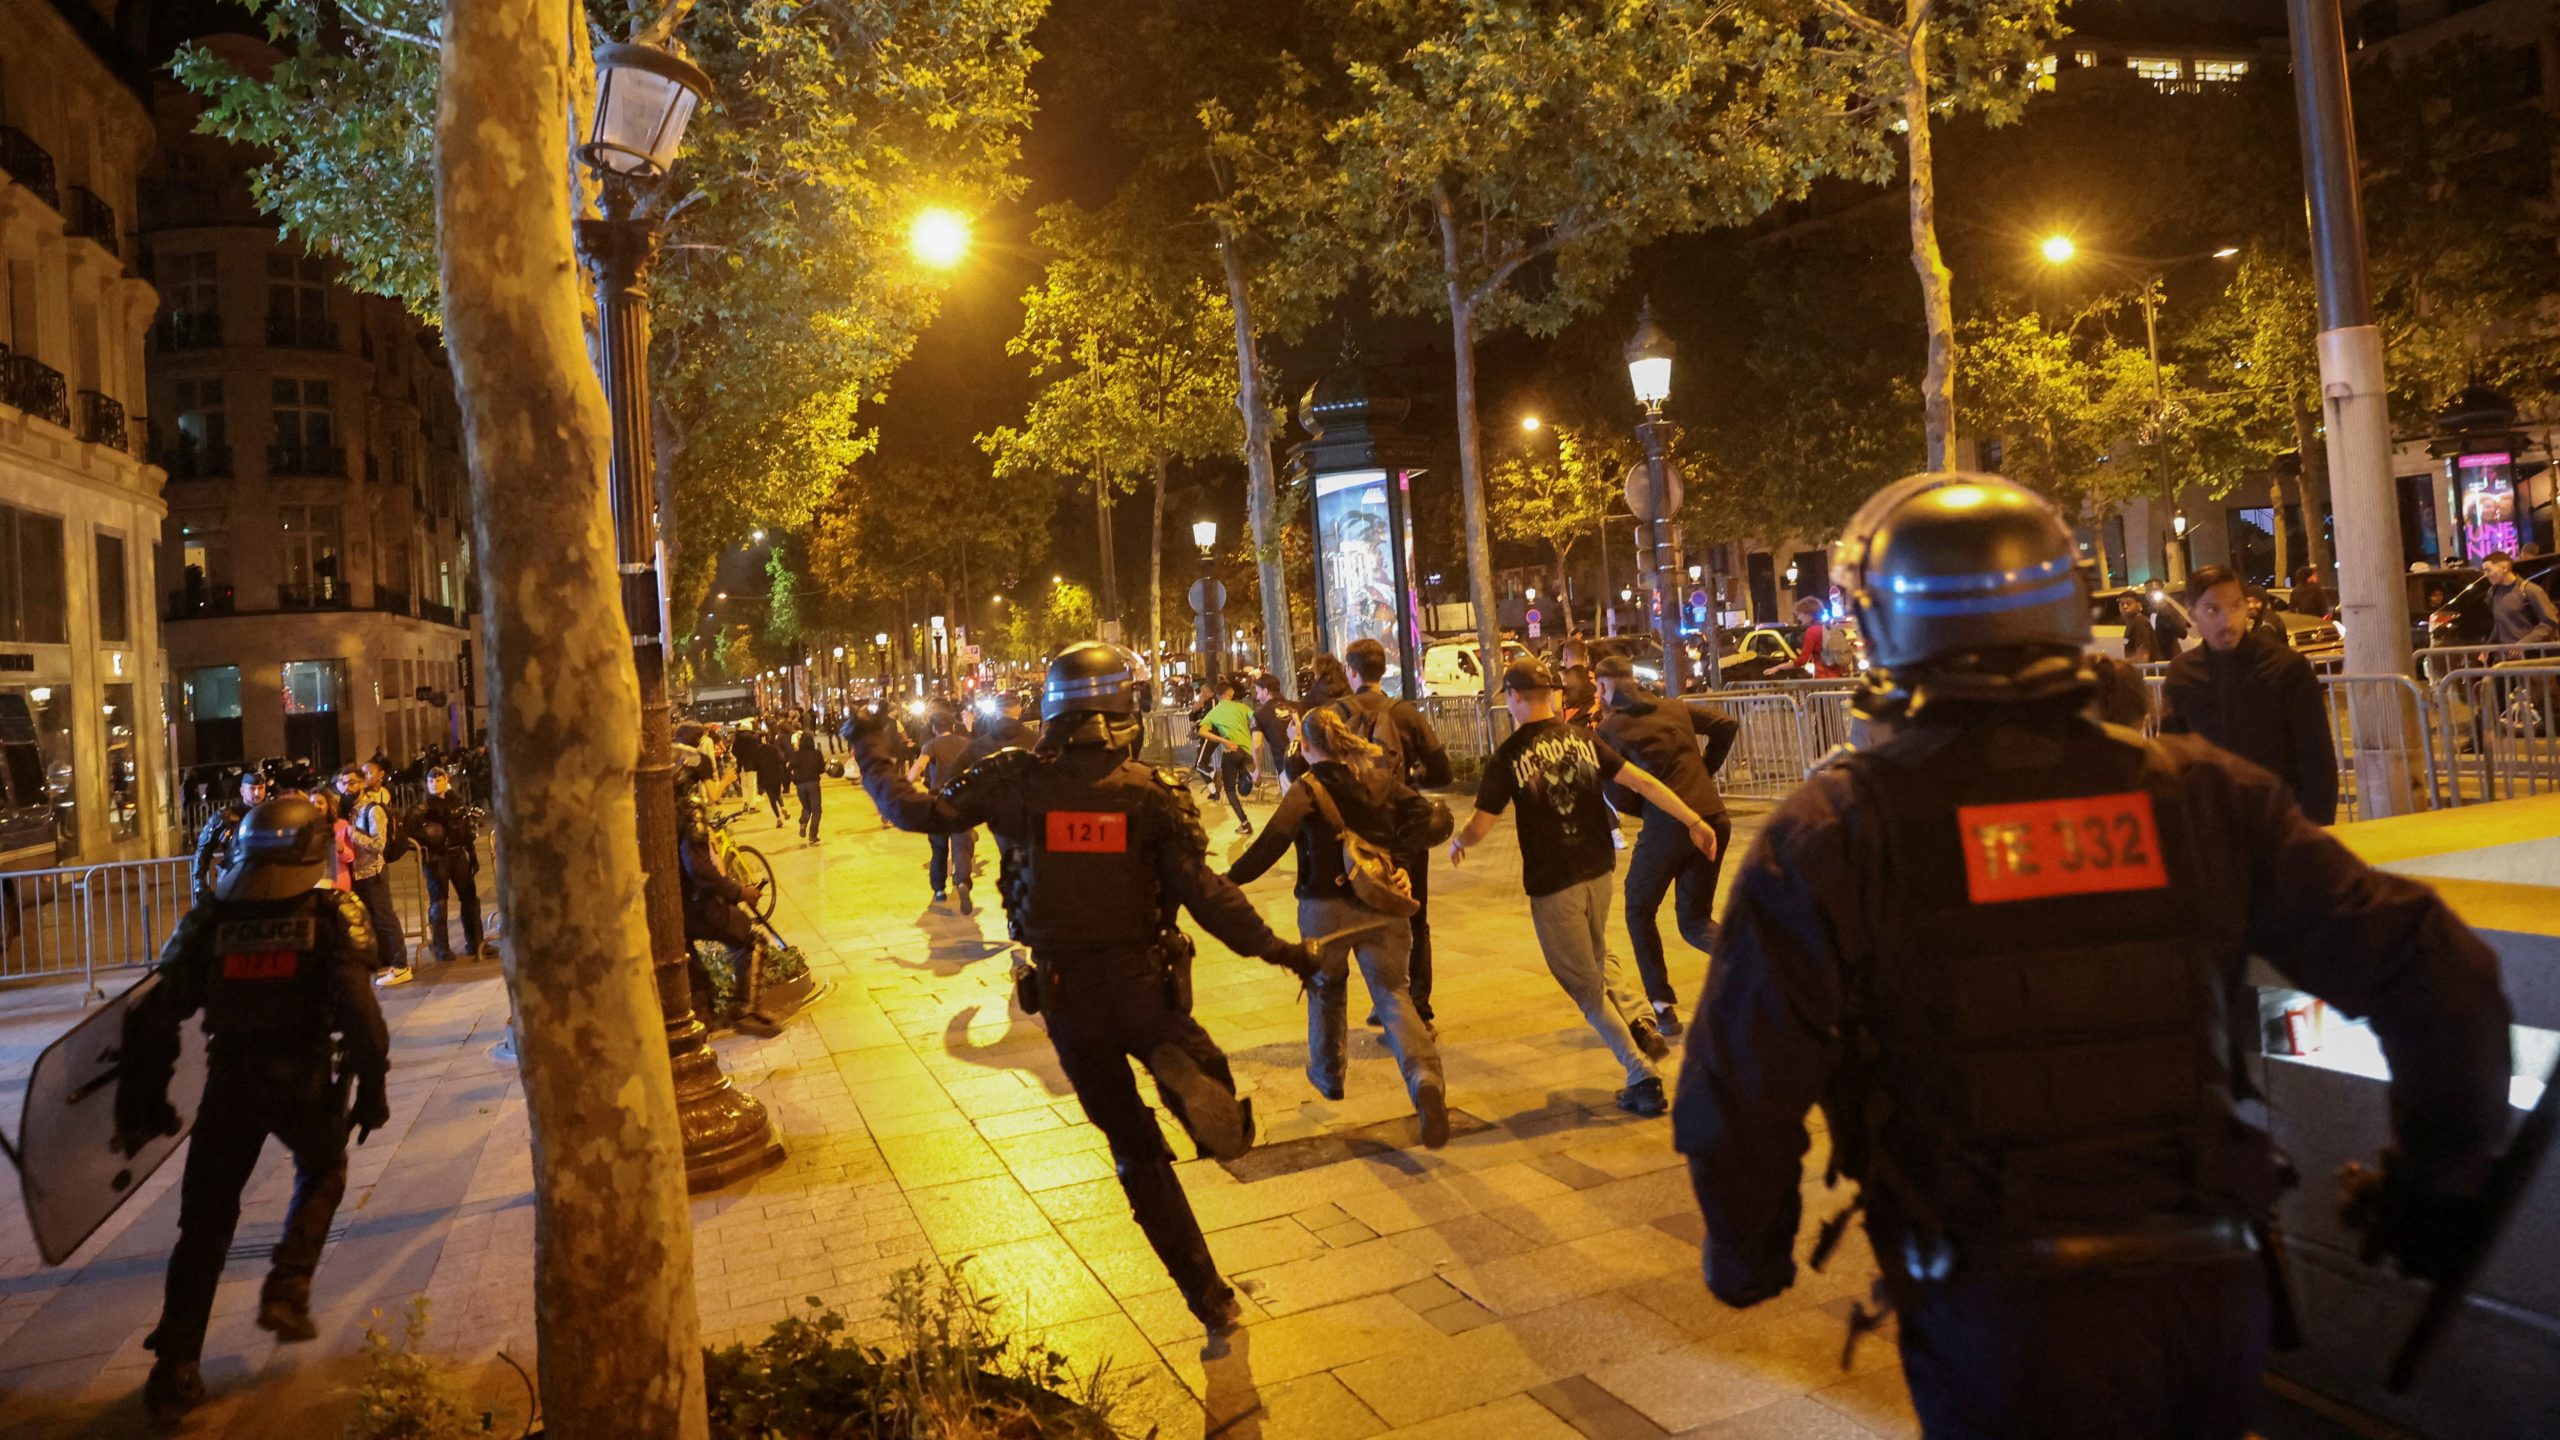 Hubo escenas de disturbios alrededor del Arco del Triunfo en París el verano pasado